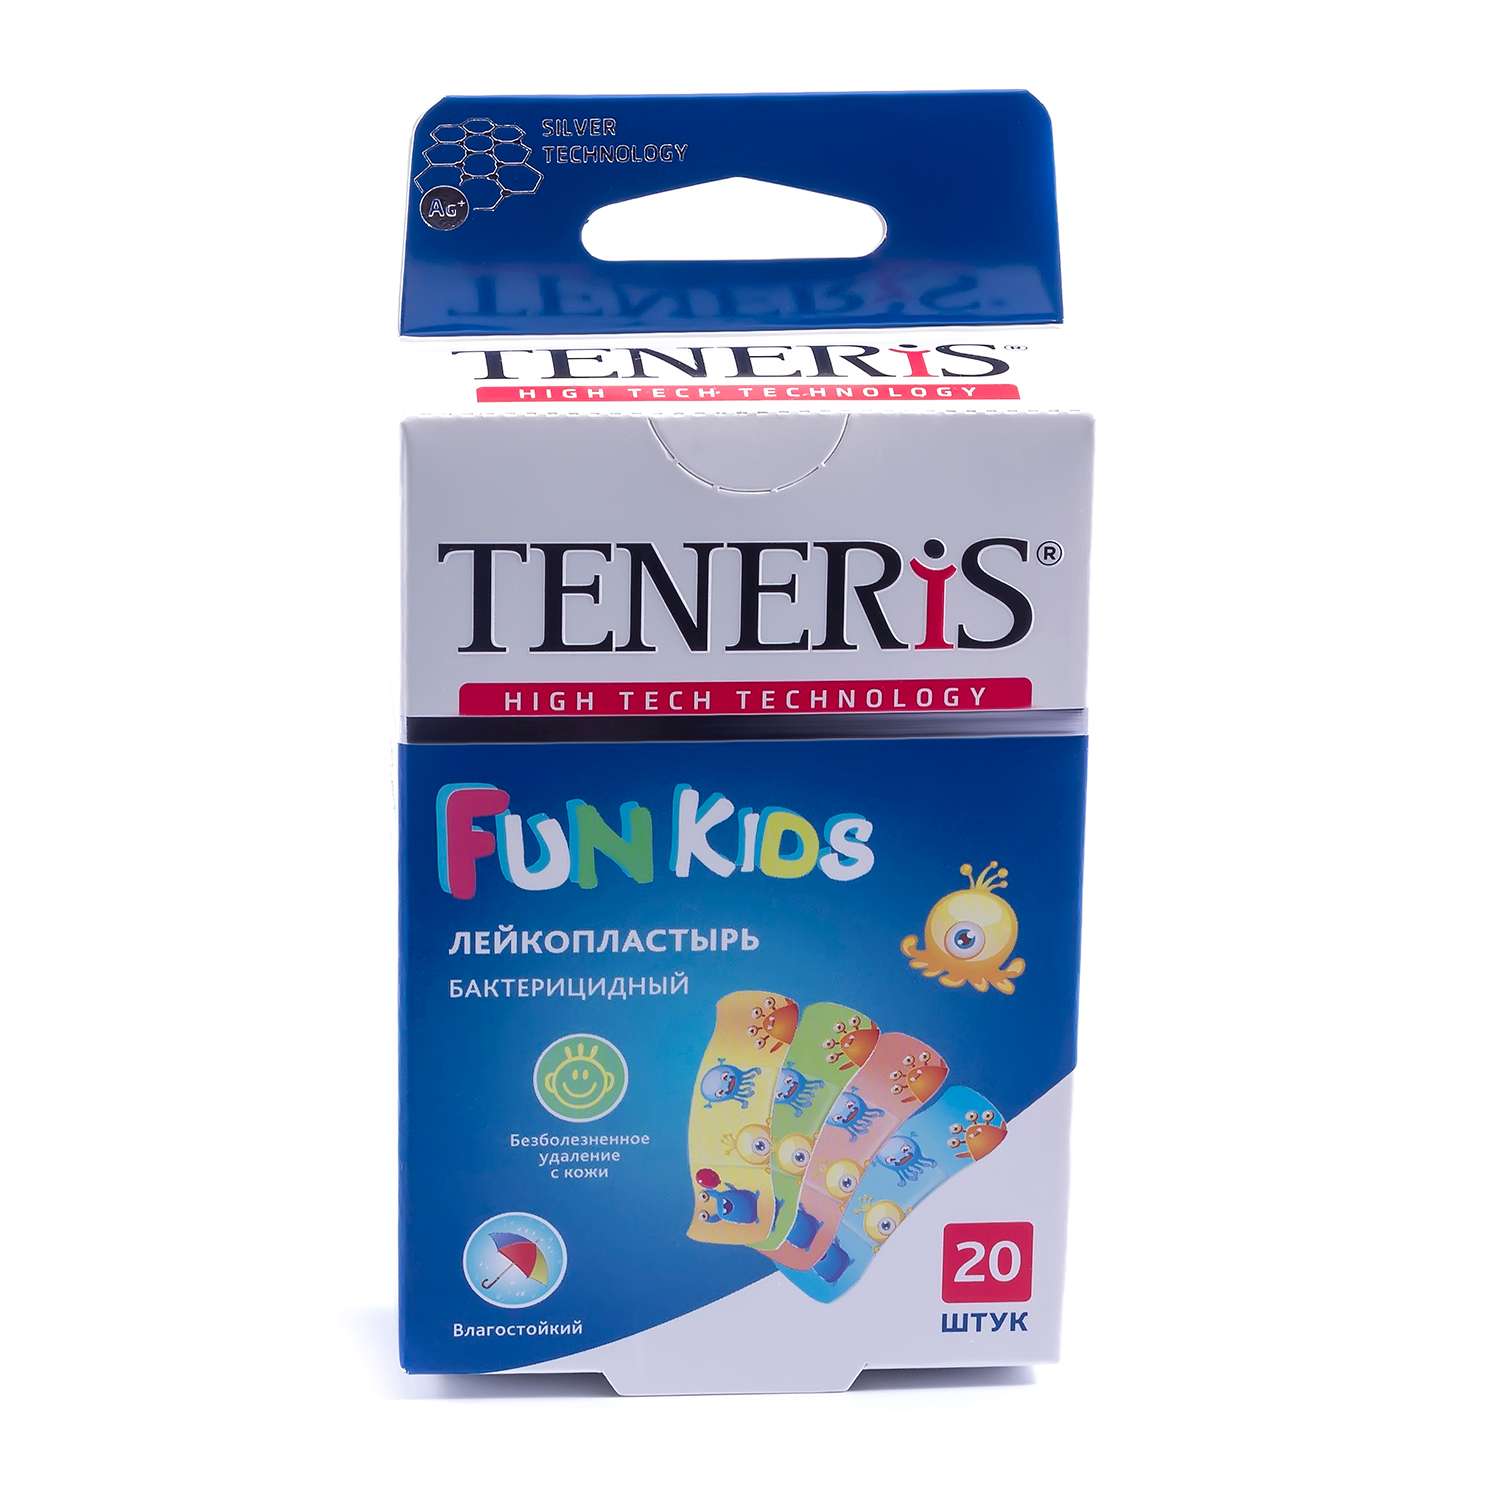 Лейкопластырь TENERIS Fun Kids бактерицидный с рисунками 20шт - фото 1